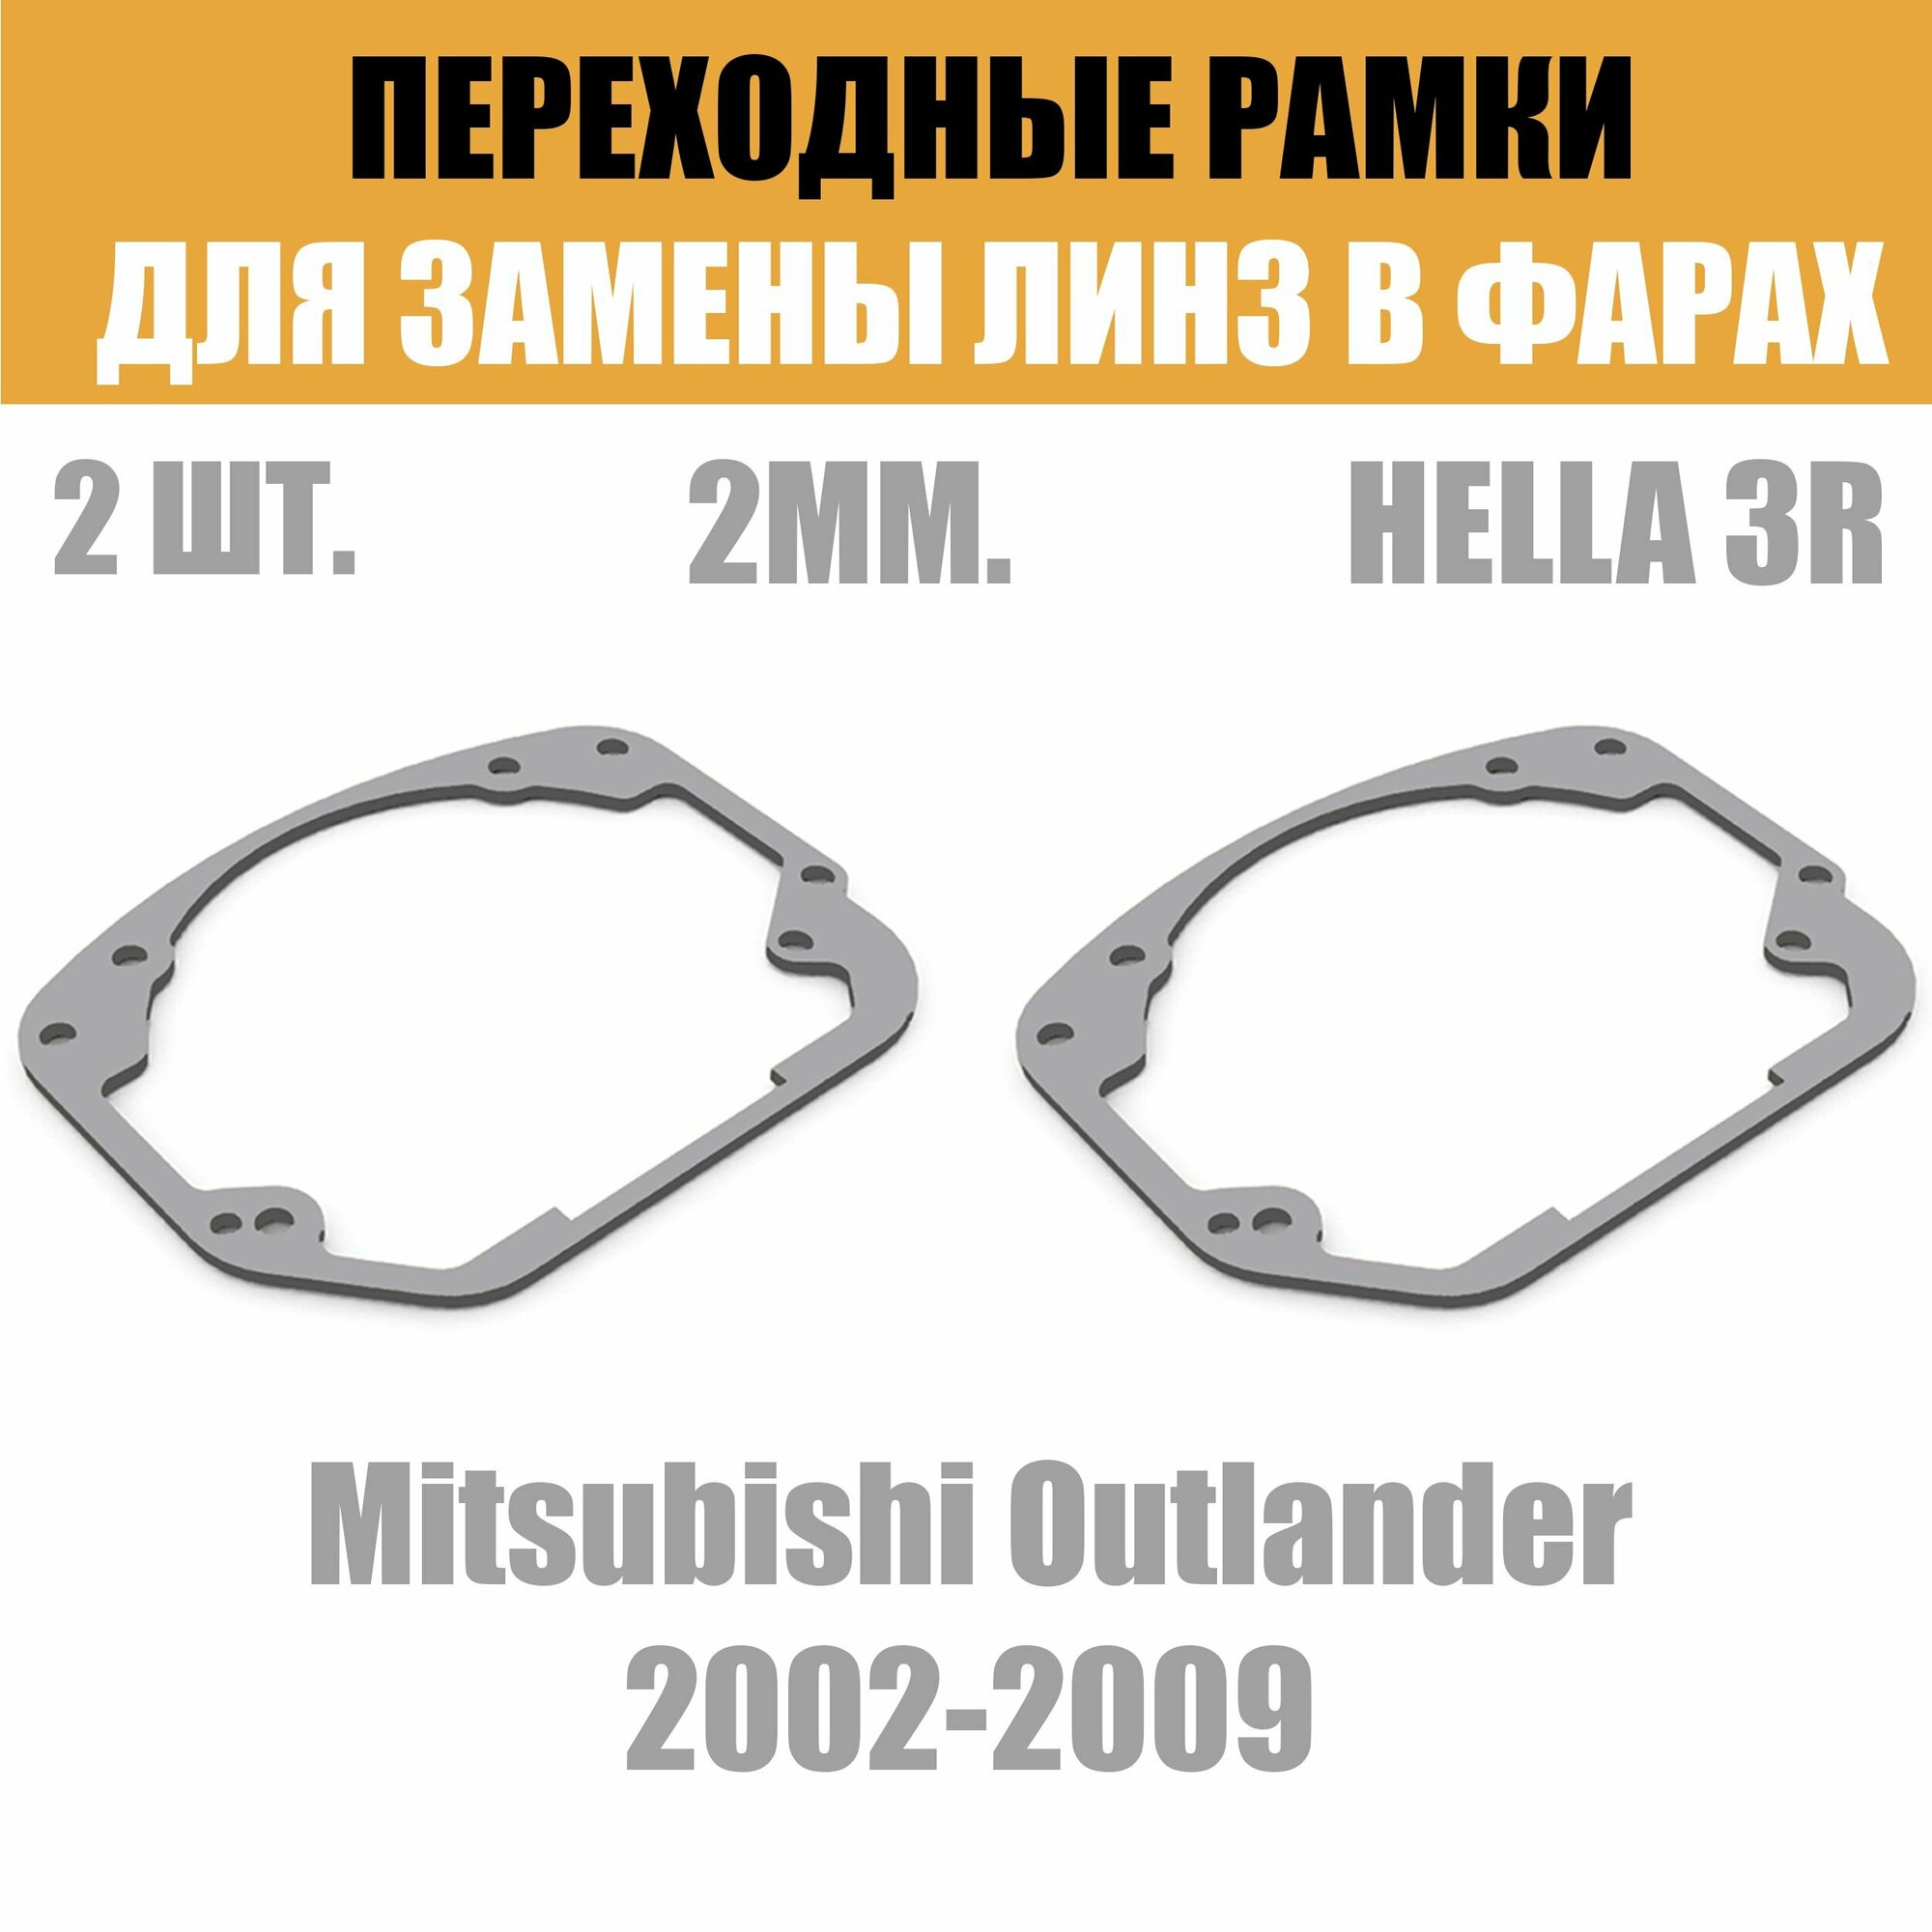 Переходные рамки для линз №24 на Mitsubishi Outlander 2002-2009 под модуль Hella 3R/Hella 3 (Комплект, 2шт)